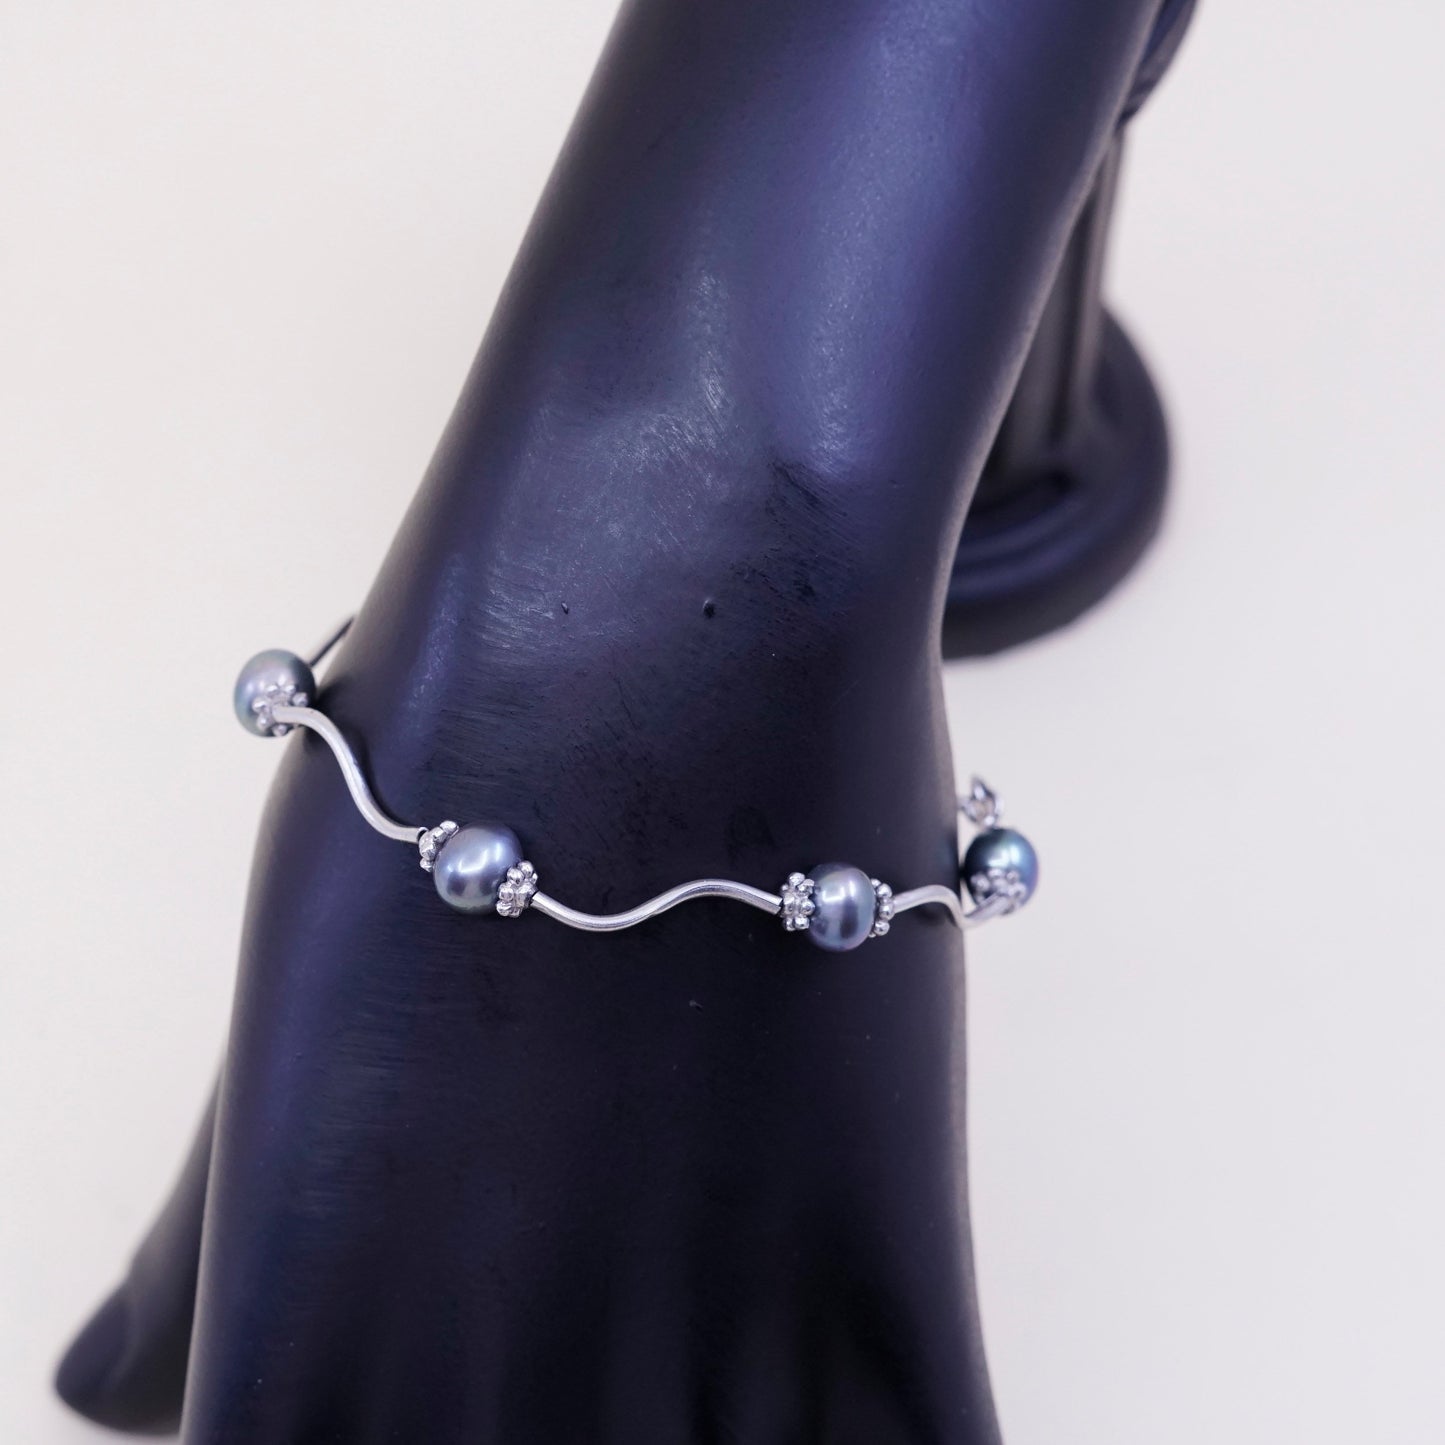 6.5”, vtg sterling silver handmade bracelet 925 wavy bar w/ black N white pearl